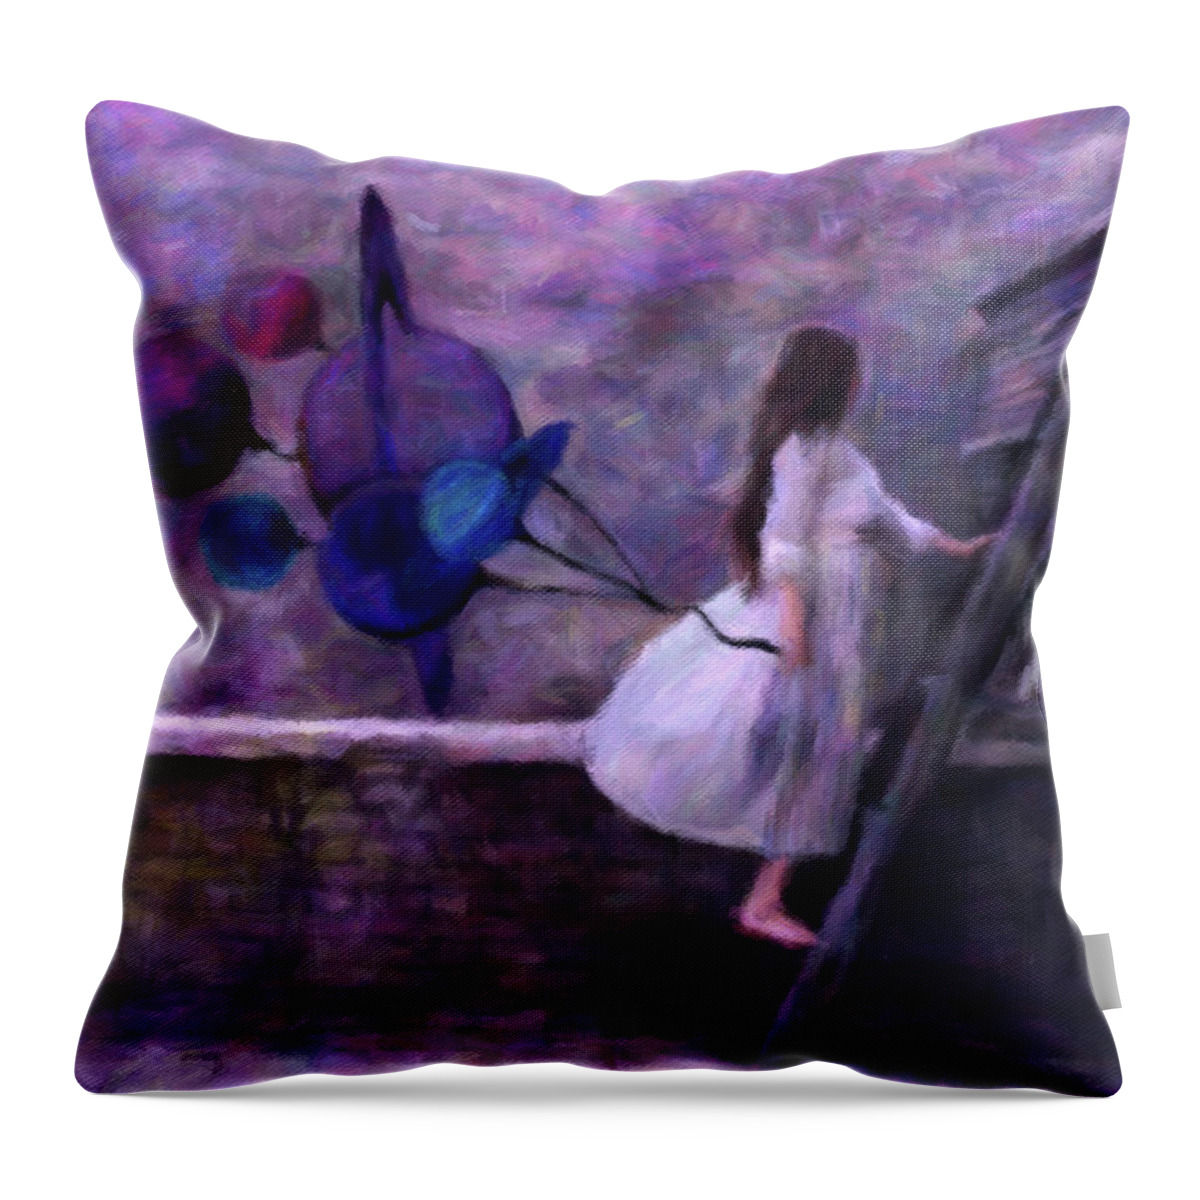 Jupiter's Daughter Throw Pillow featuring the digital art Jupiter's Daughter by Susan Maxwell Schmidt